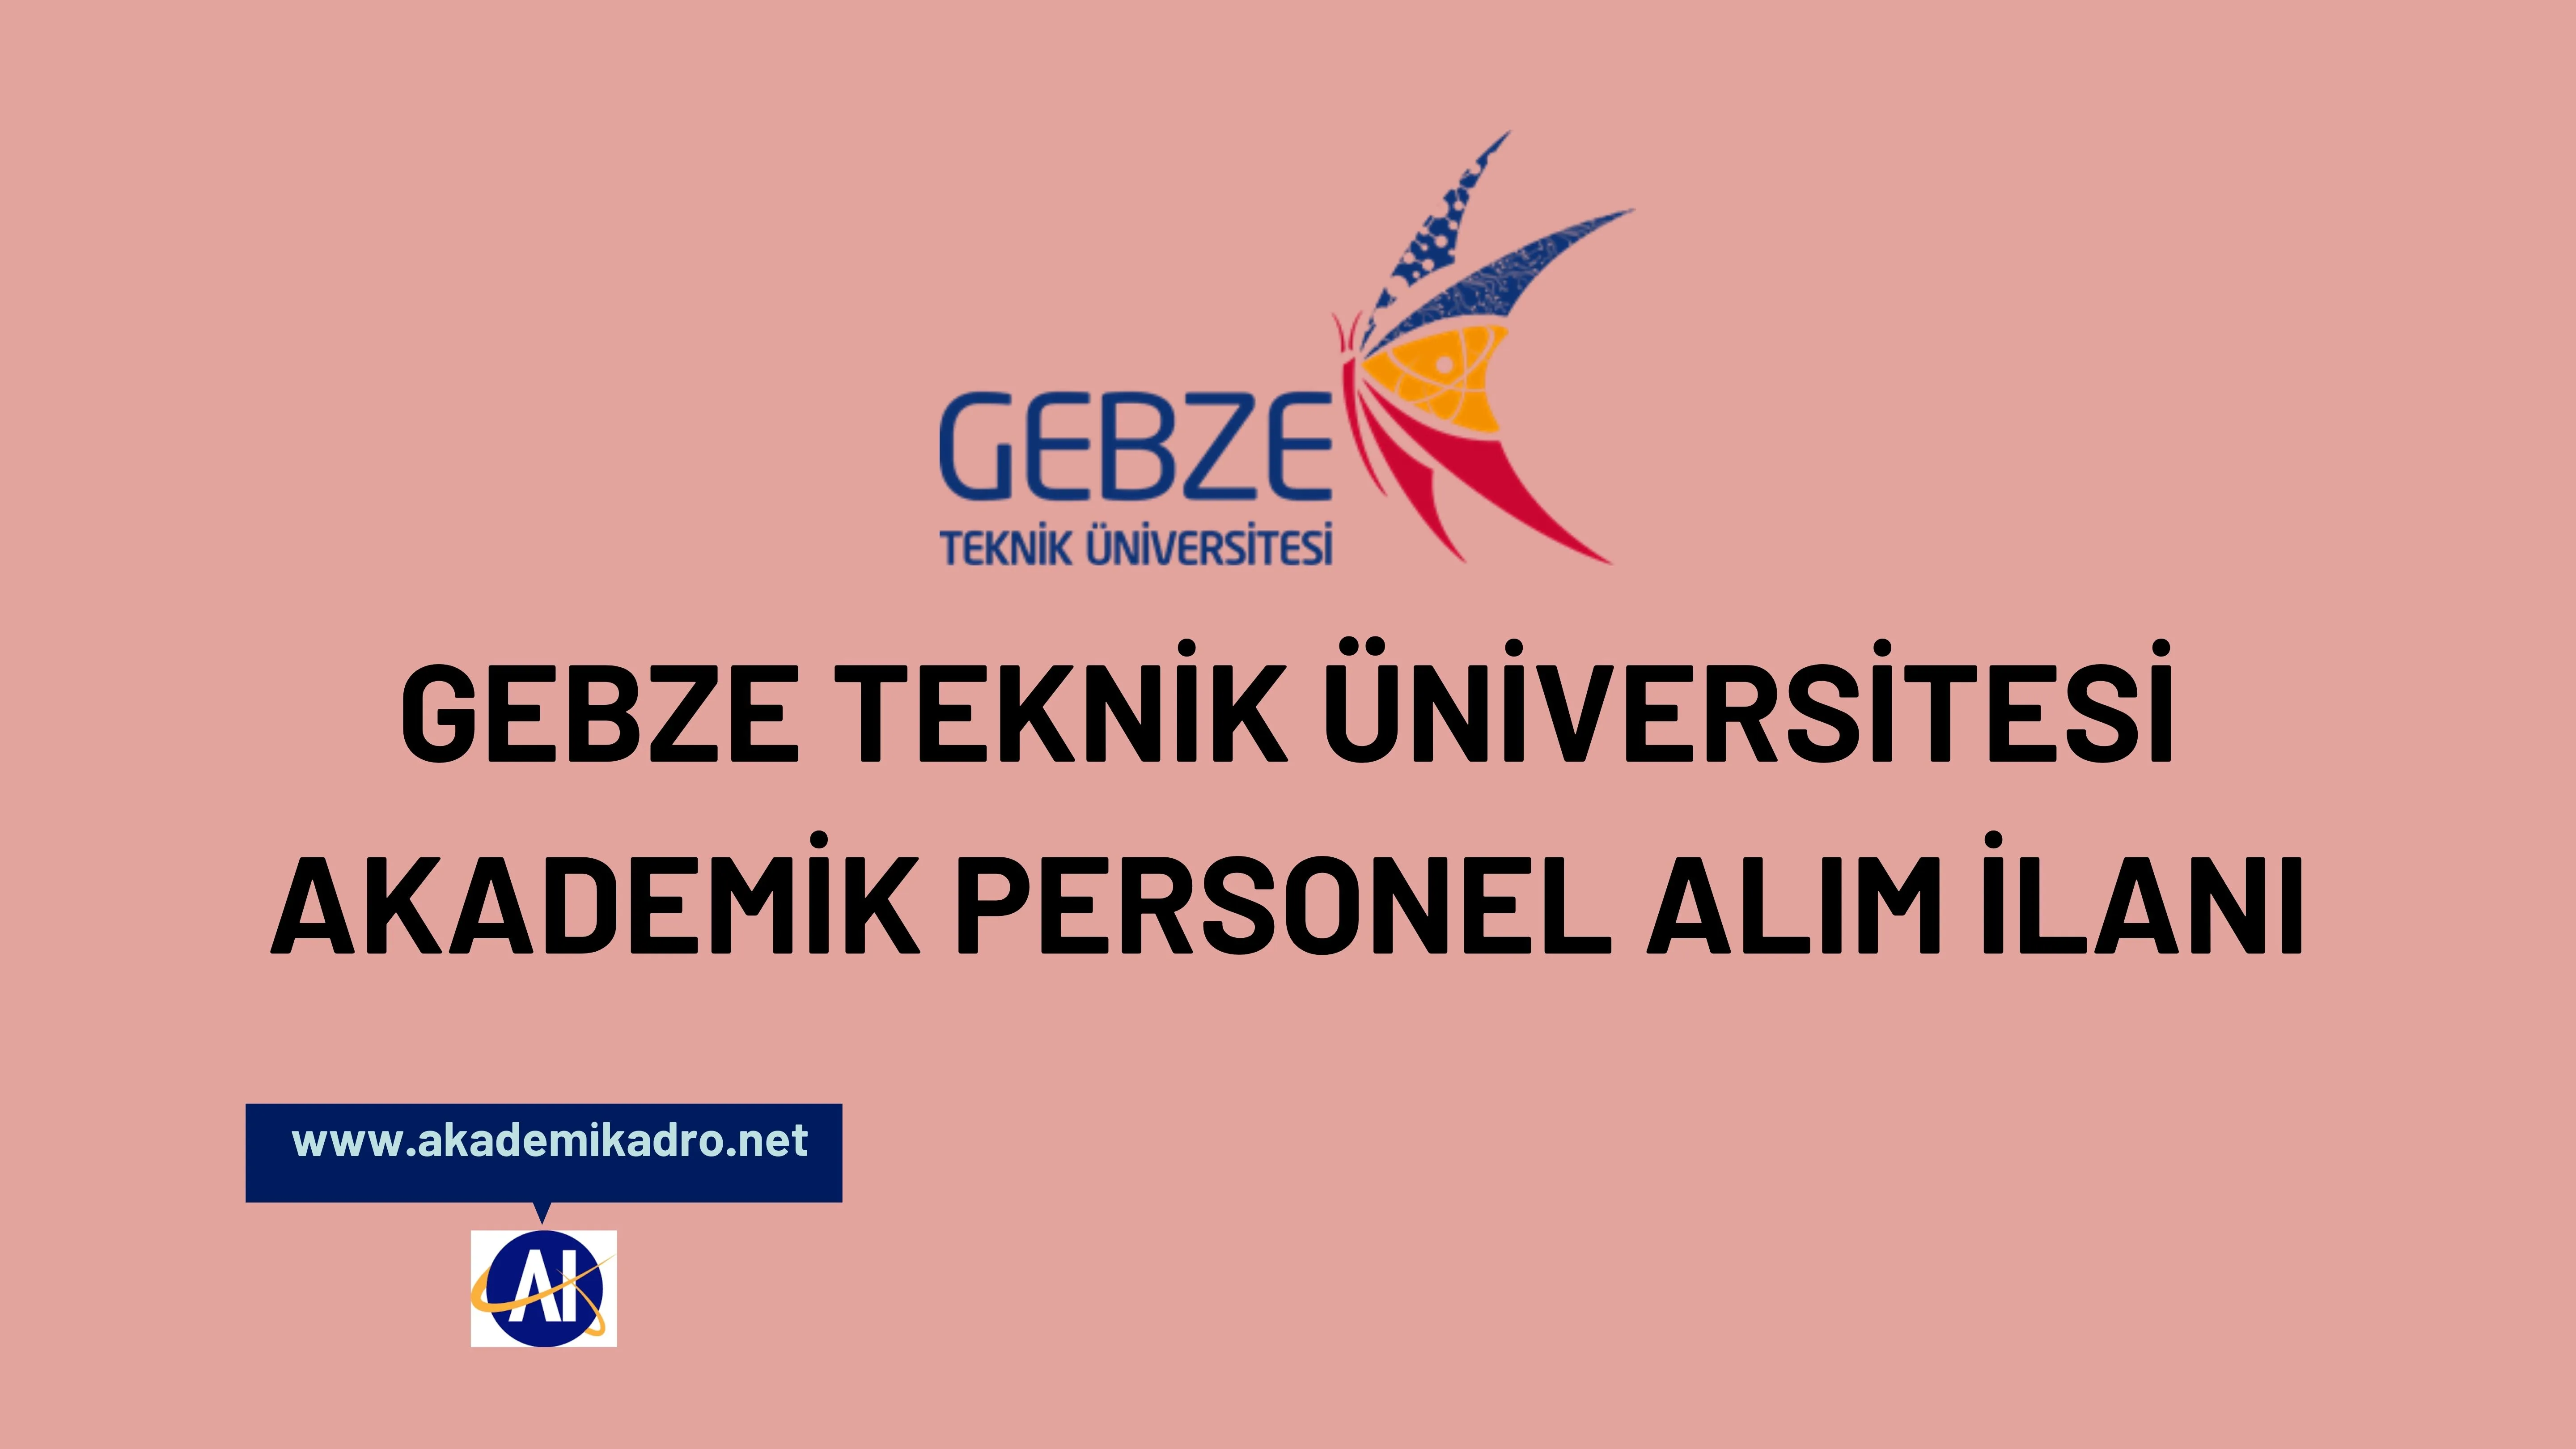 Gebze Teknik Üniversitesi çeşitli branşlarda 8 akademik personel alacak.